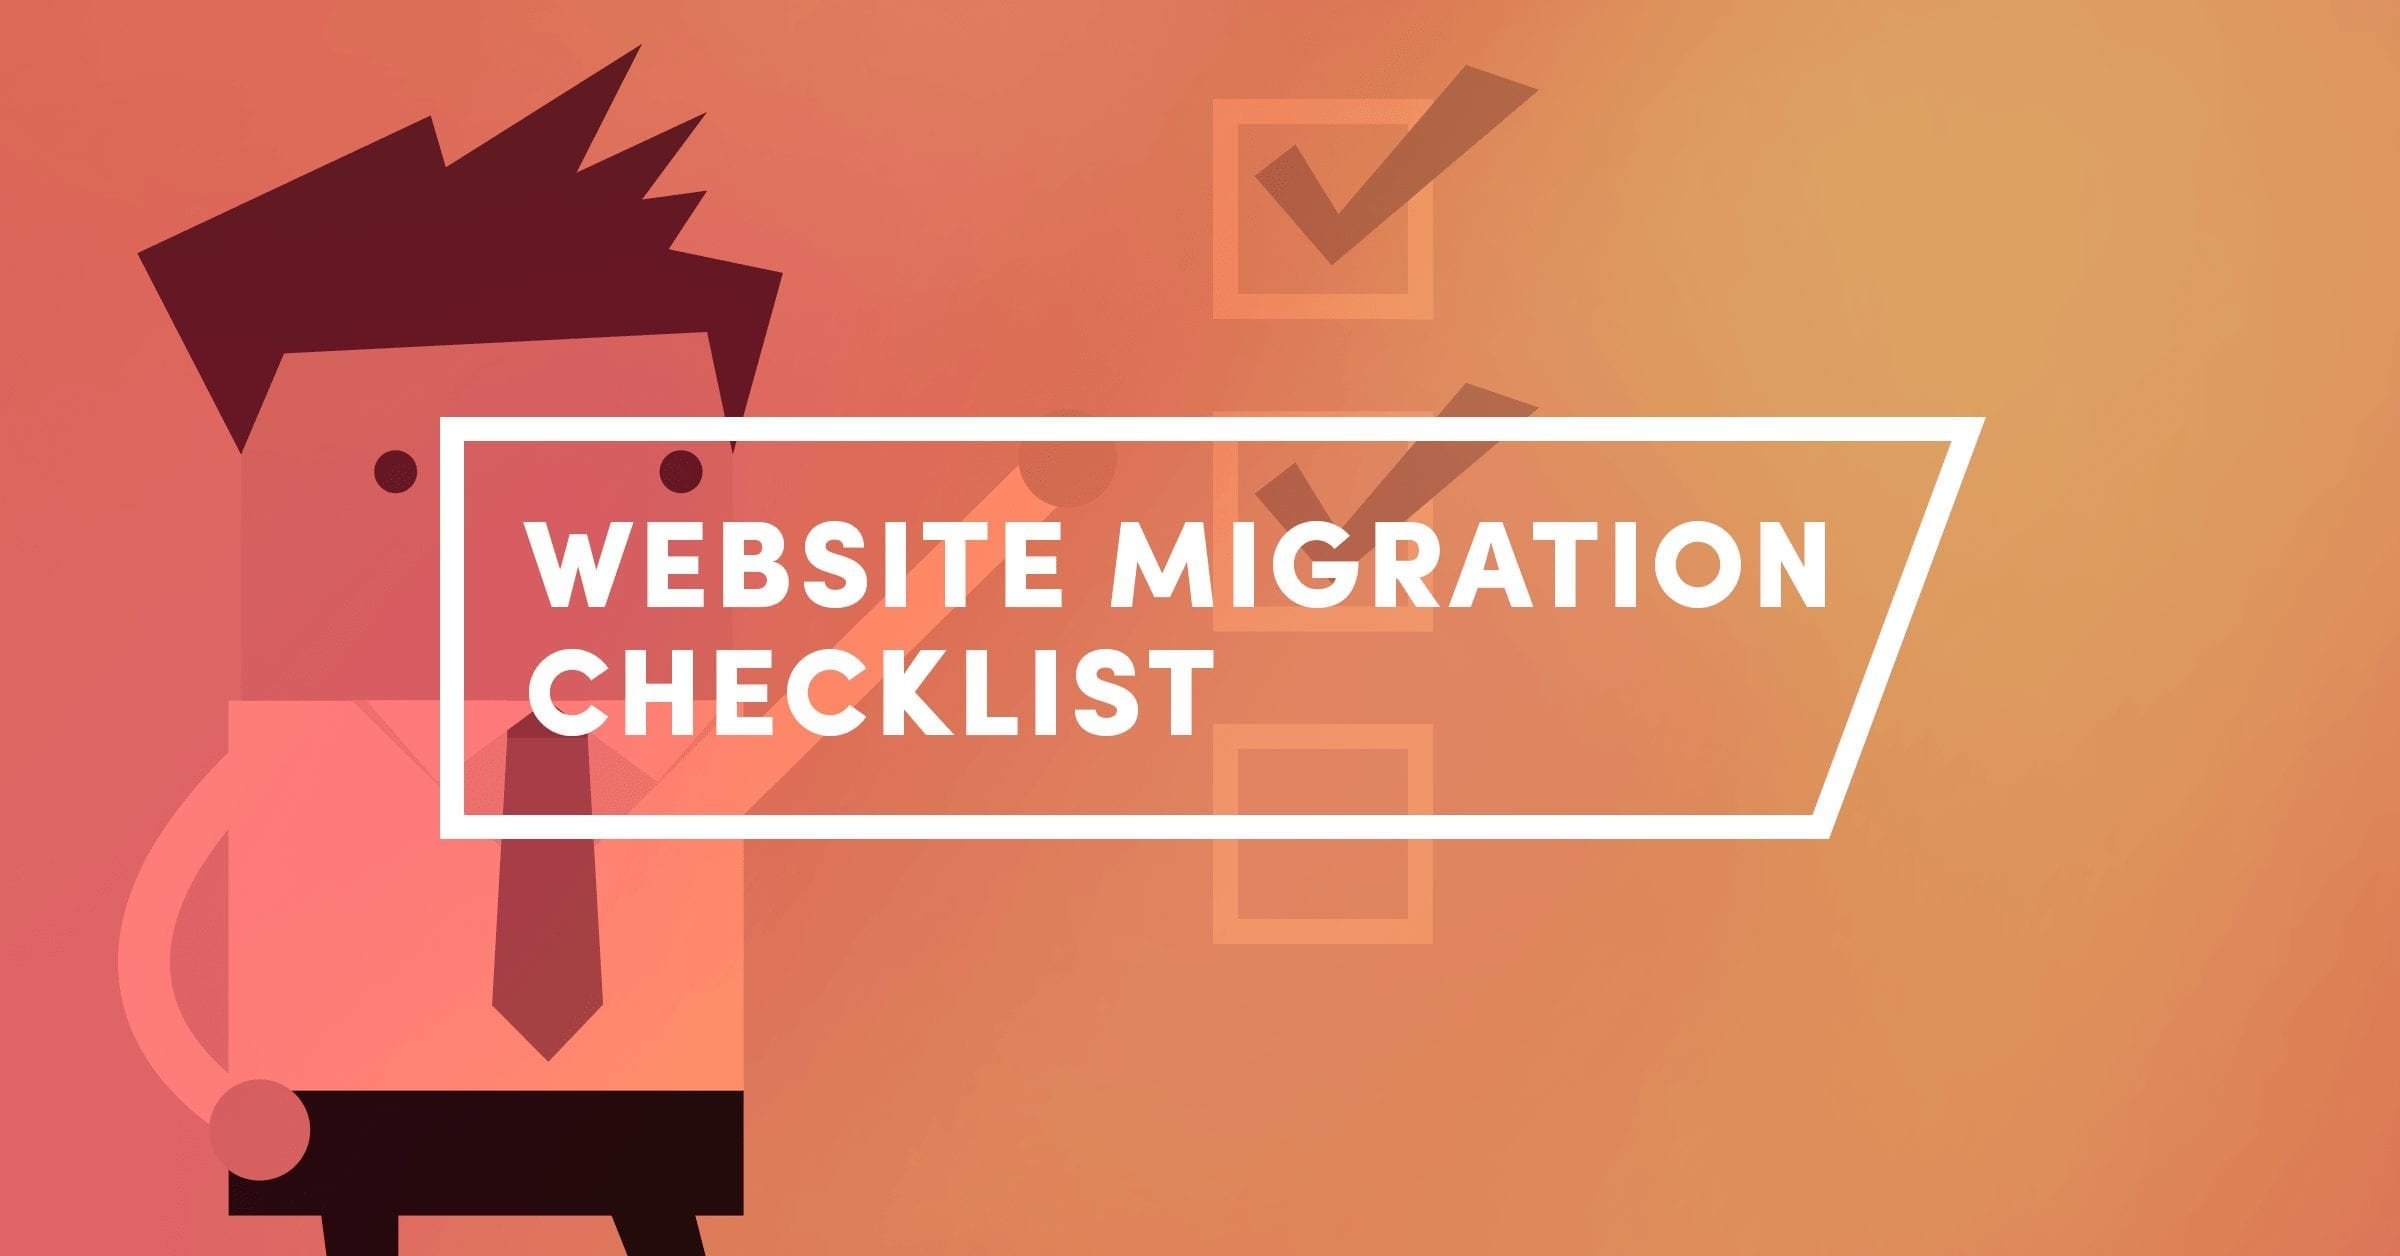 website migration checklist graphic